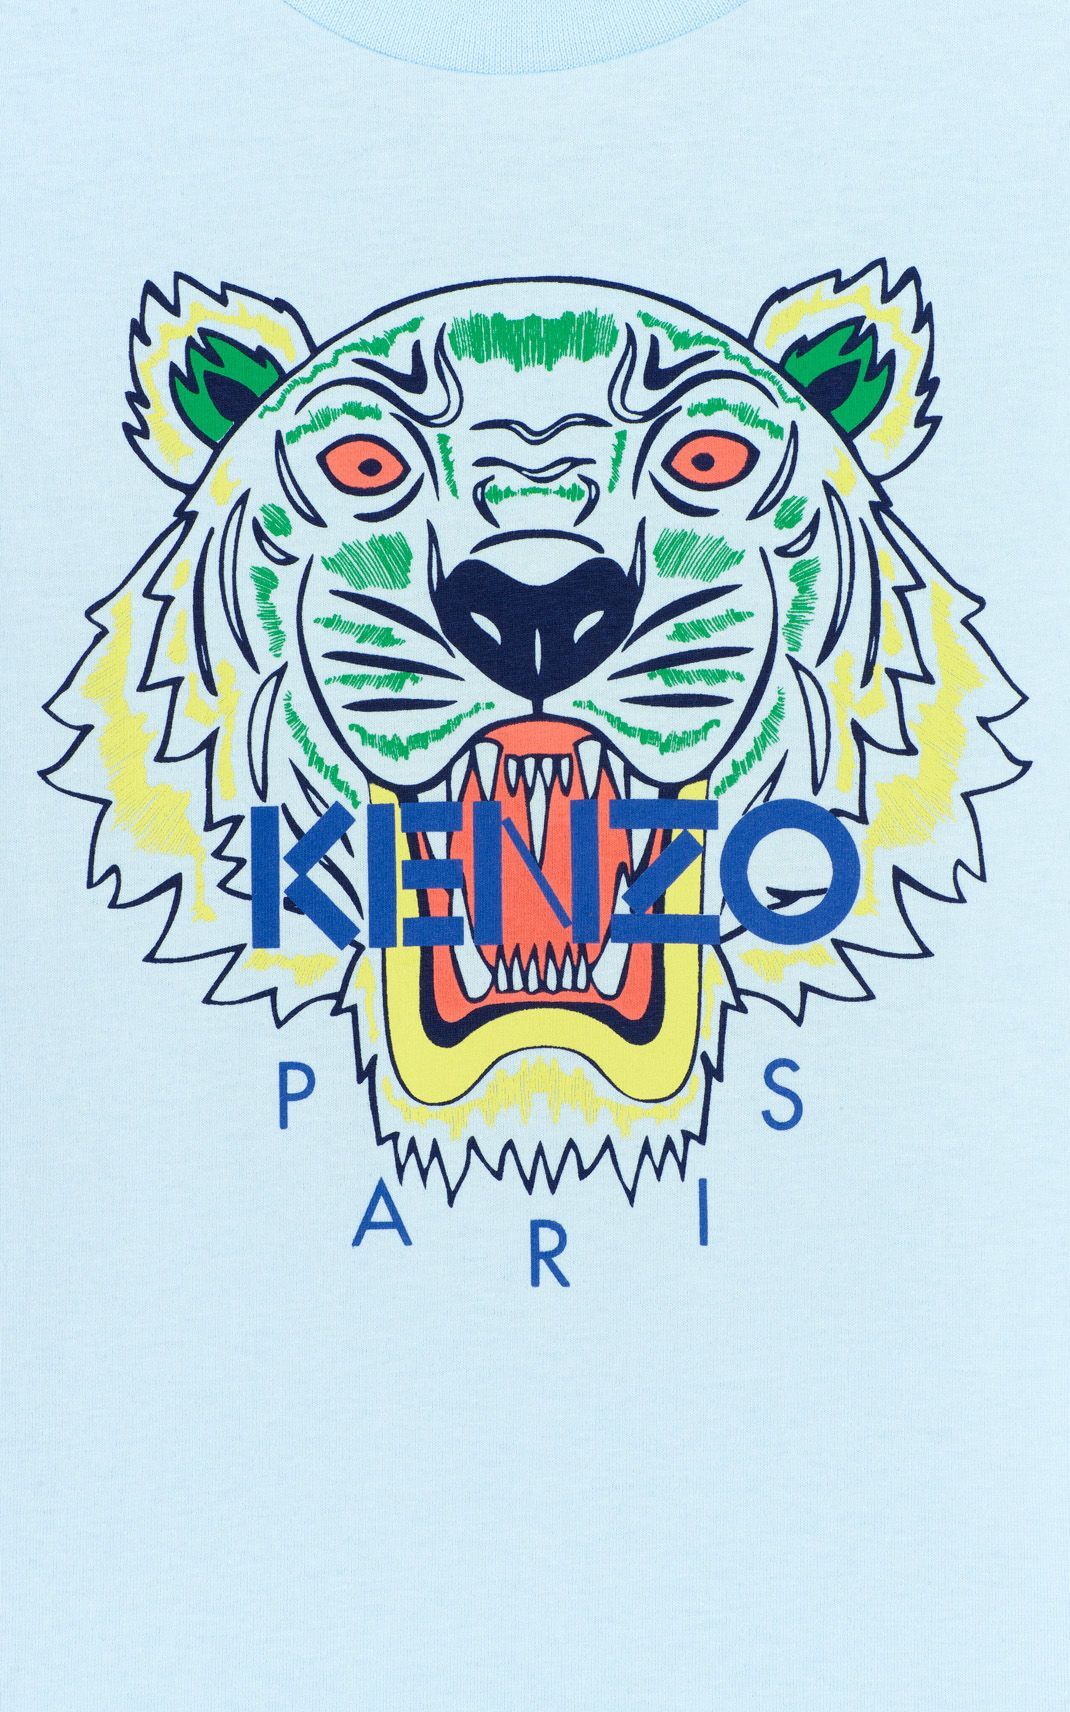 Details 149+ kenzo logo wallpaper latest - 3tdesign.edu.vn